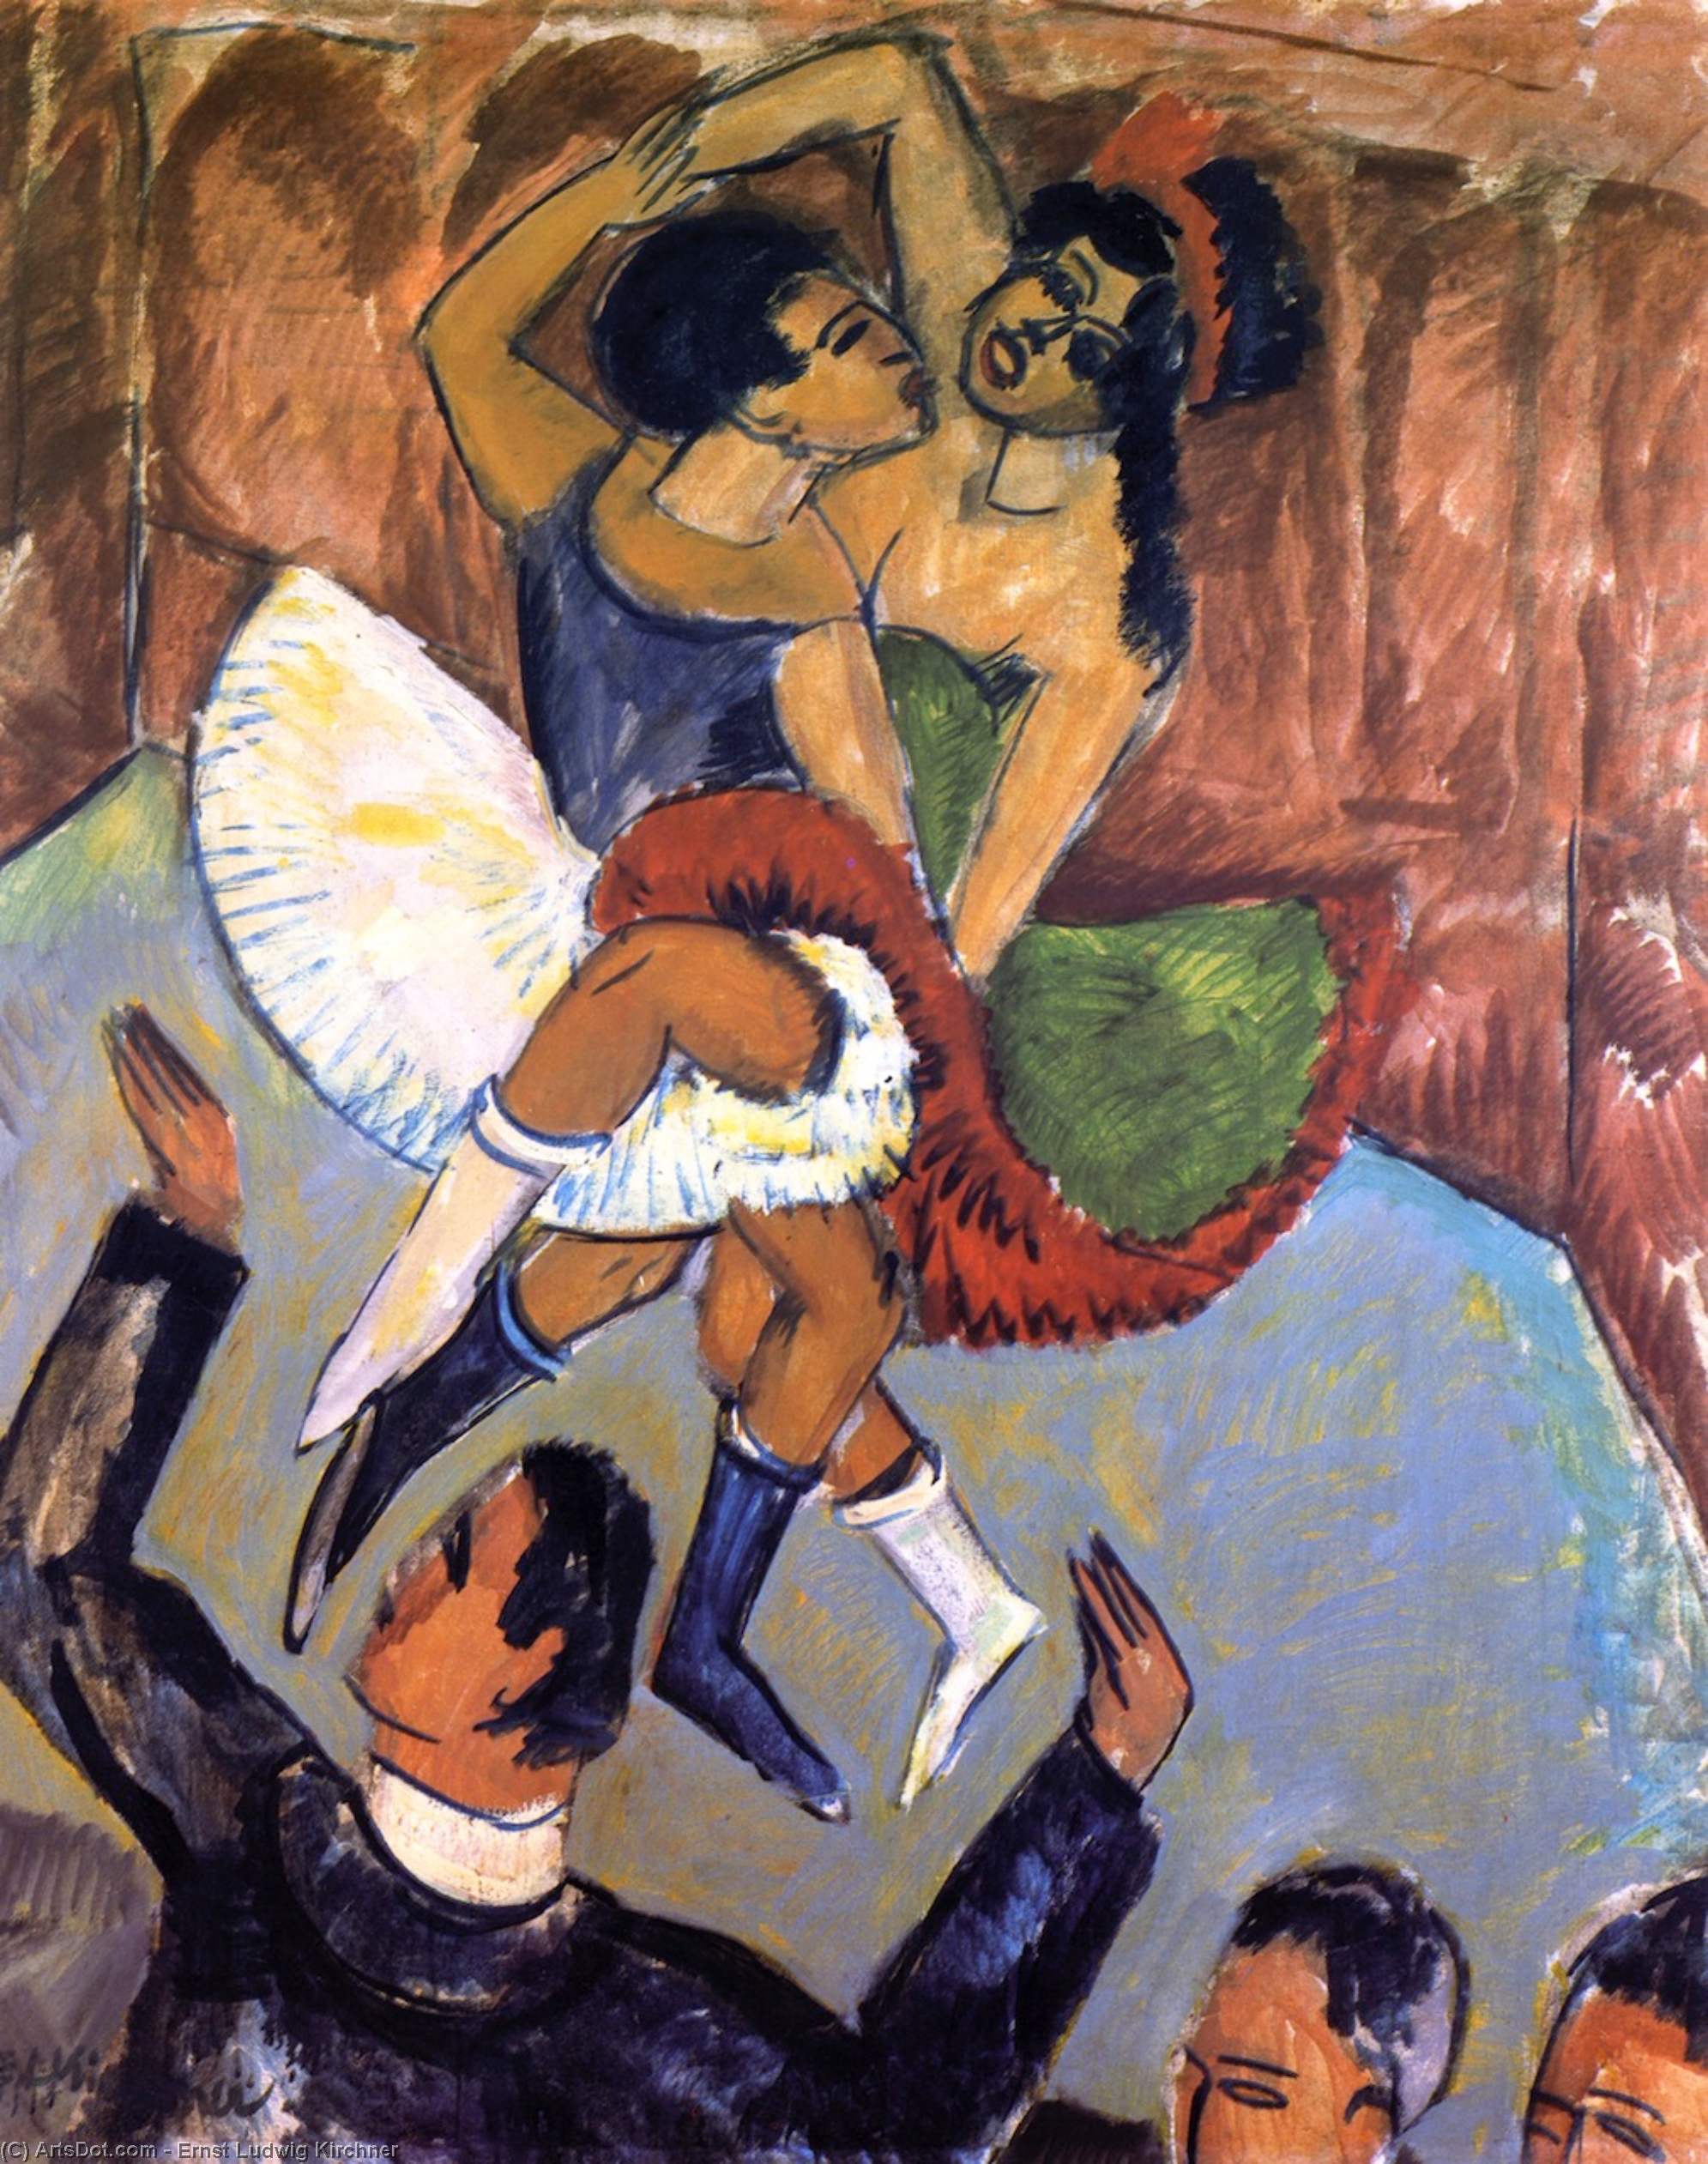 Acheter Reproductions D'art De Musée Negertanz, 1911 de Ernst Ludwig Kirchner (1880-1938, Germany) | ArtsDot.com